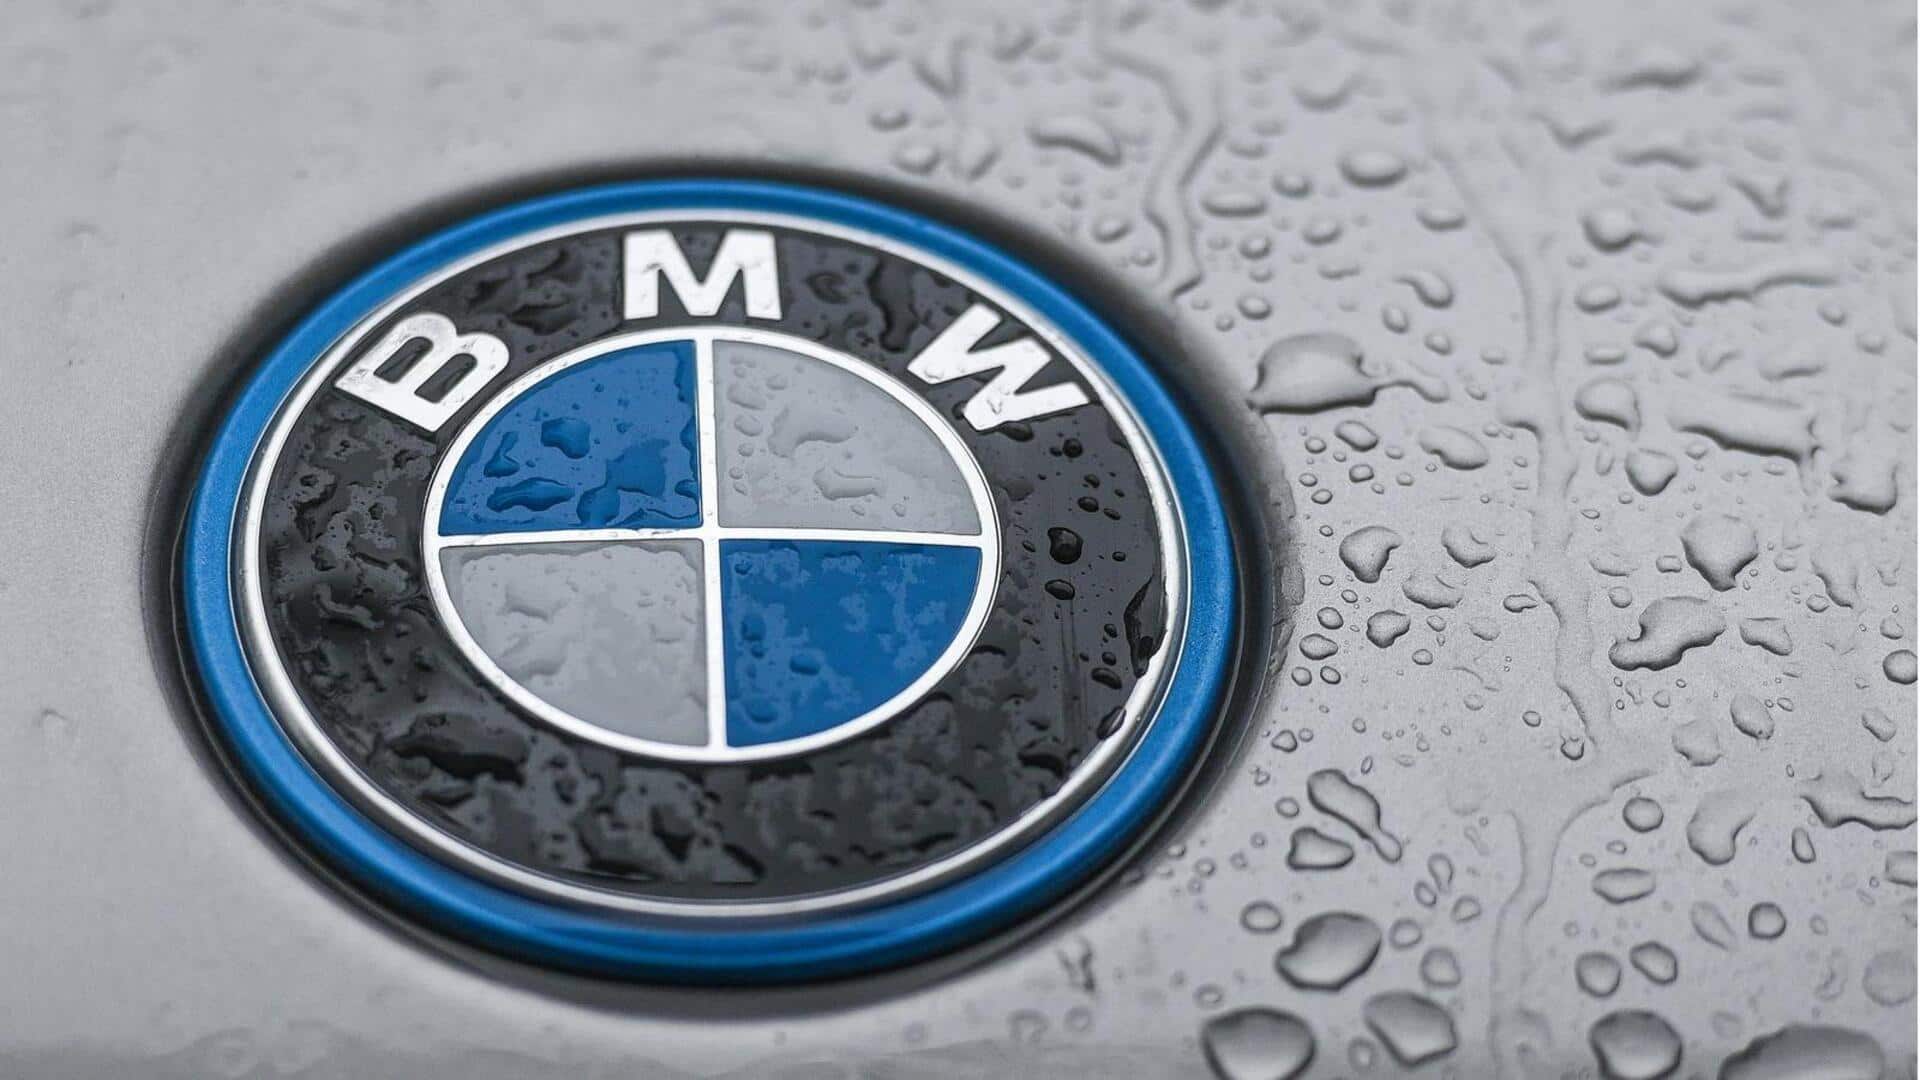 BMW's Q3 margin beats estimates, maintains annual forecast